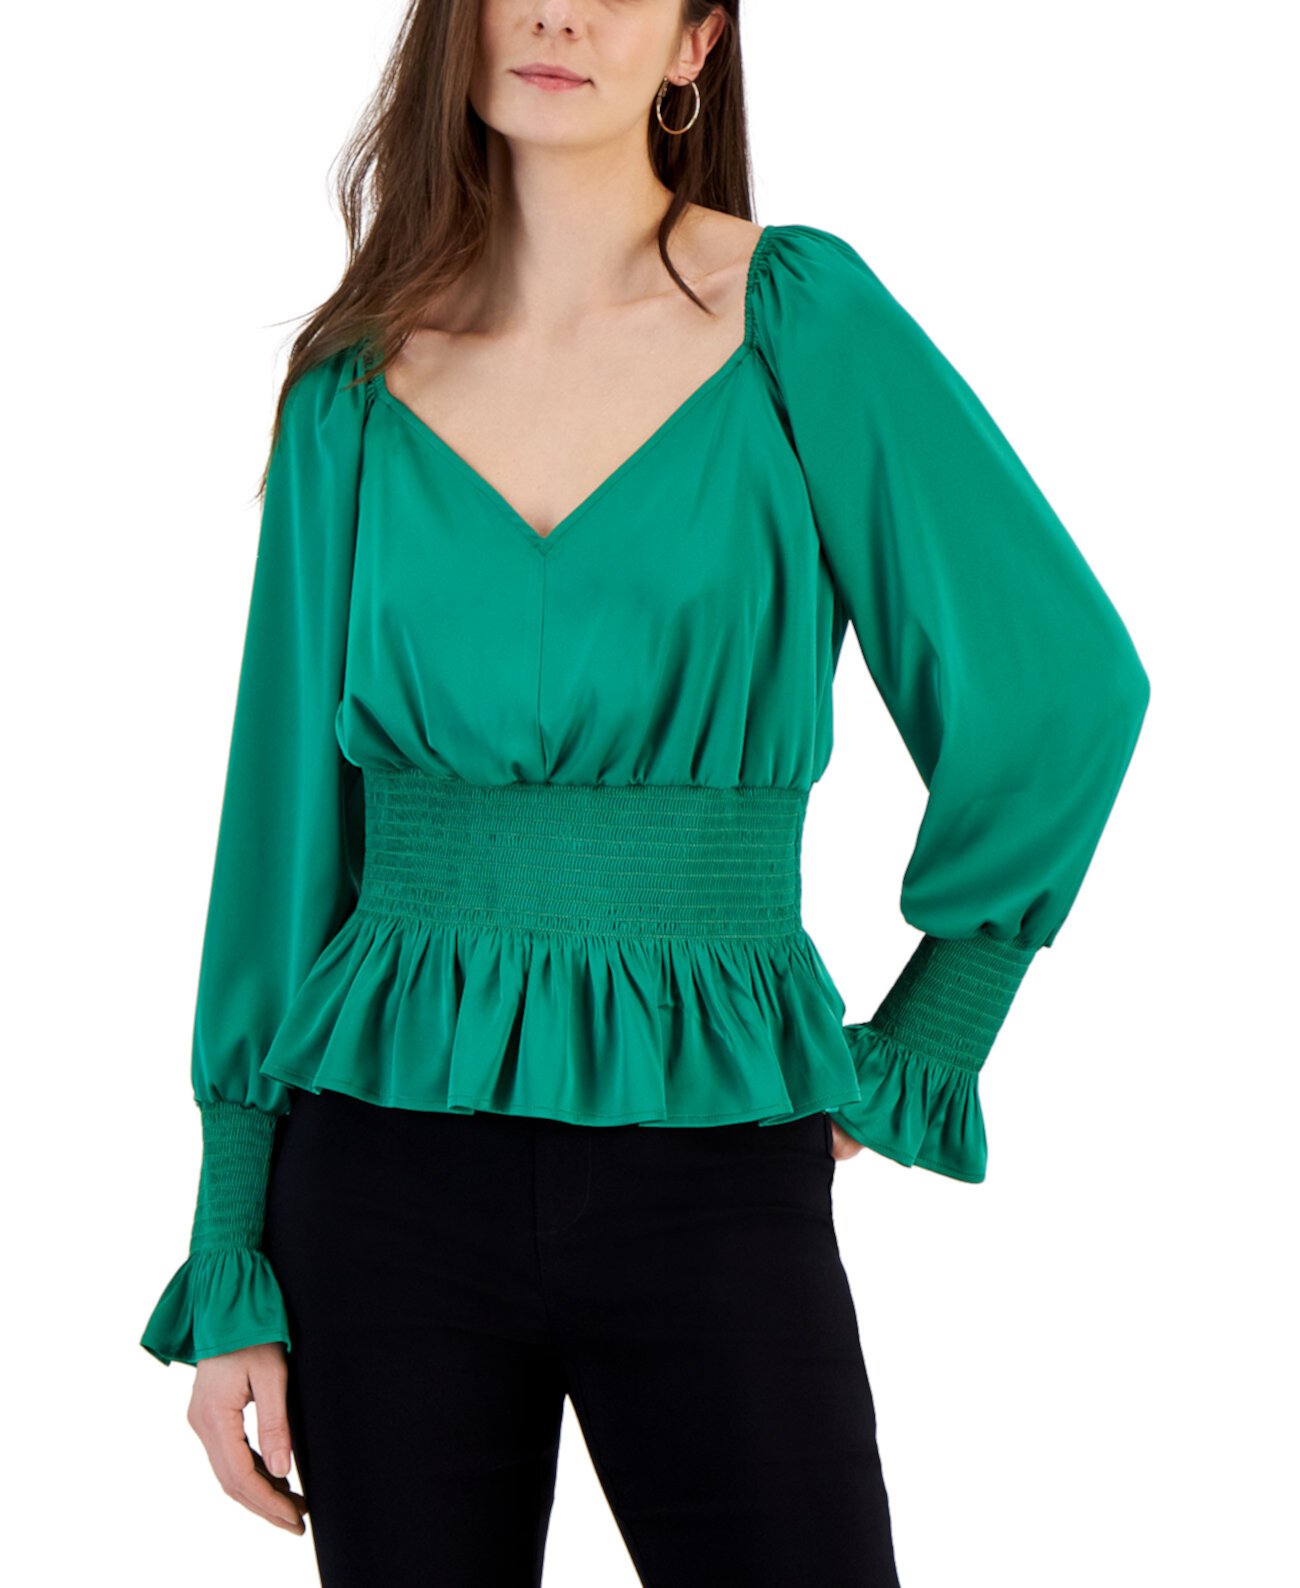 Присборенная блуза с V-образным вырезом и принтом, созданная для Macy's I.N.C. International Concepts